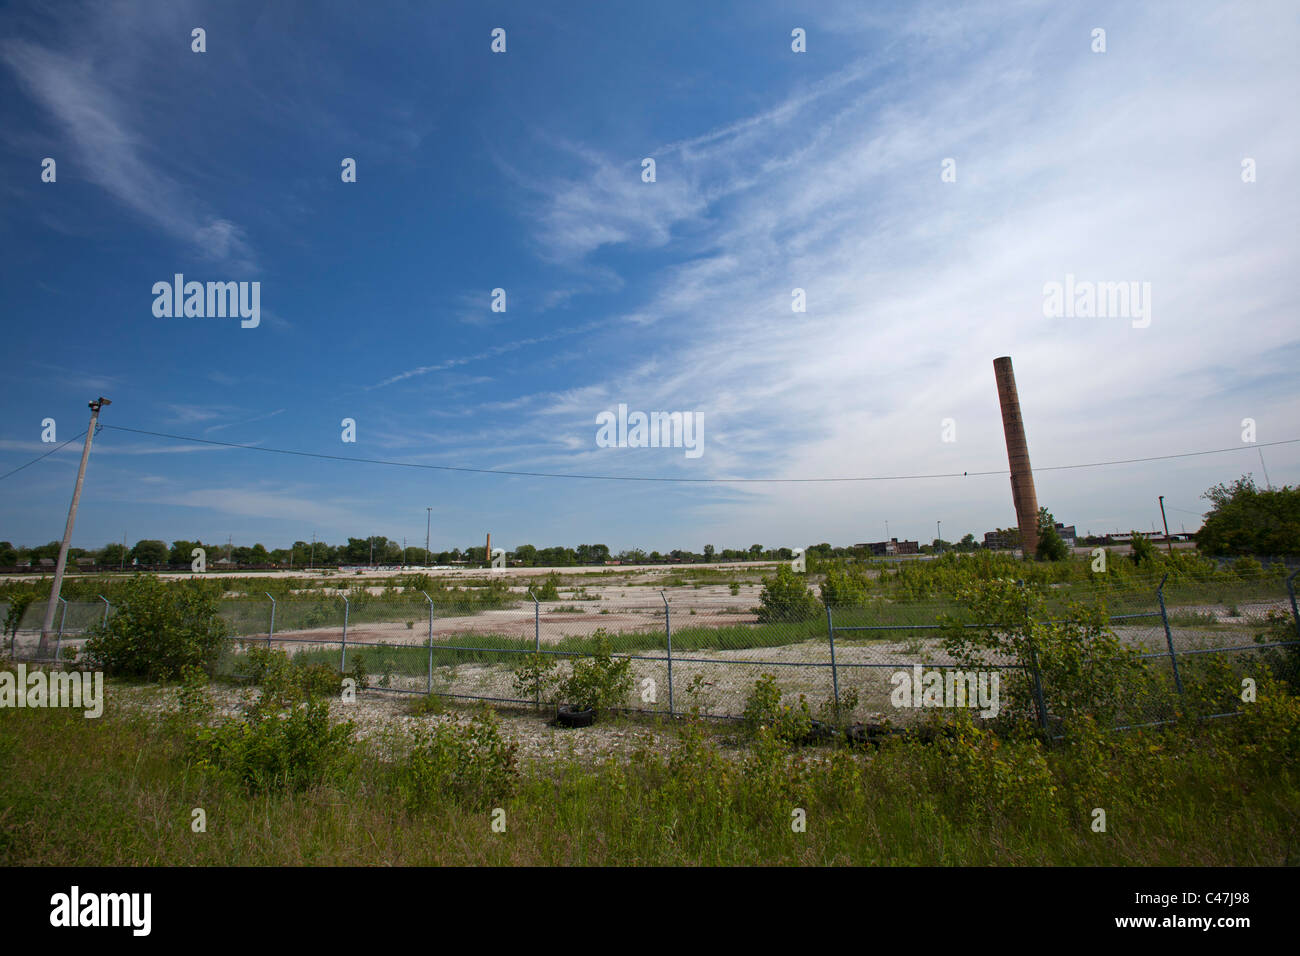 Toledo, Ohio - Il vacante è il sito di un ex Jeep impianto di assemblaggio. Foto Stock